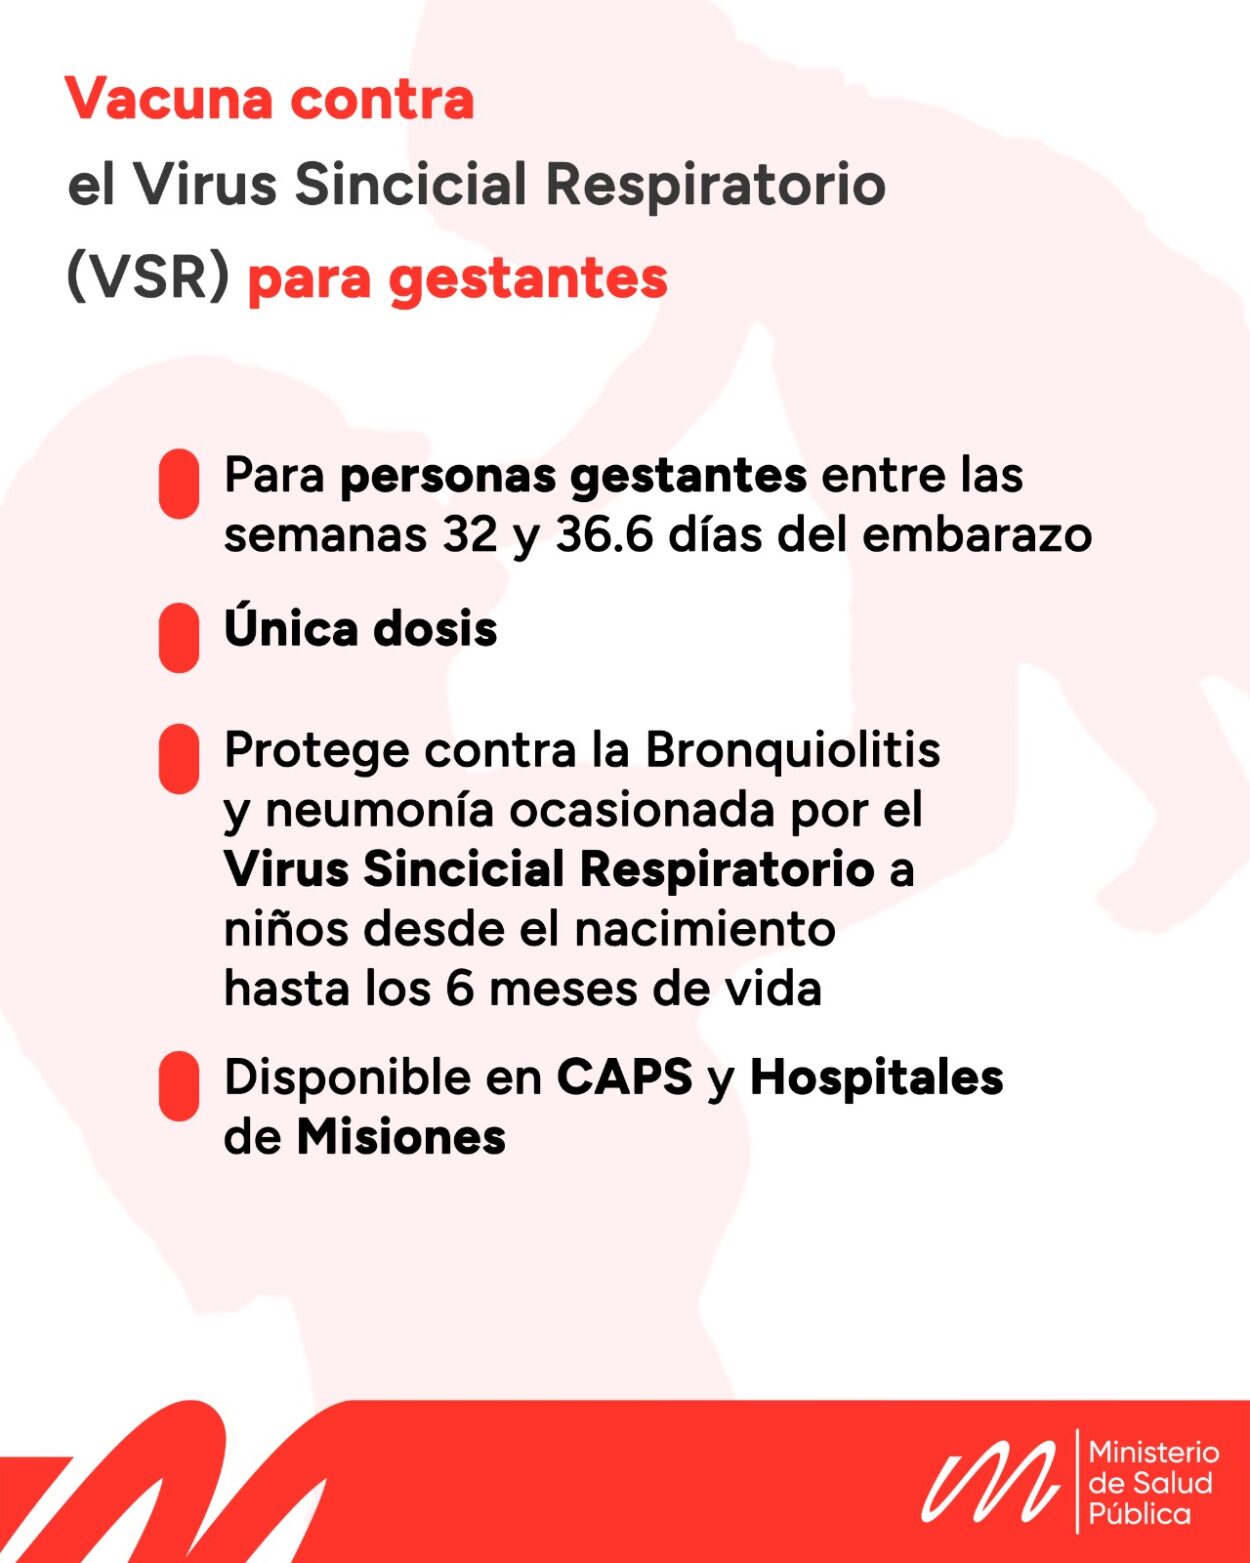 El próximo lunes arrancará la vacunación contra el Virus Sincicial Respiratorio para personas gestantes en Misiones imagen-39